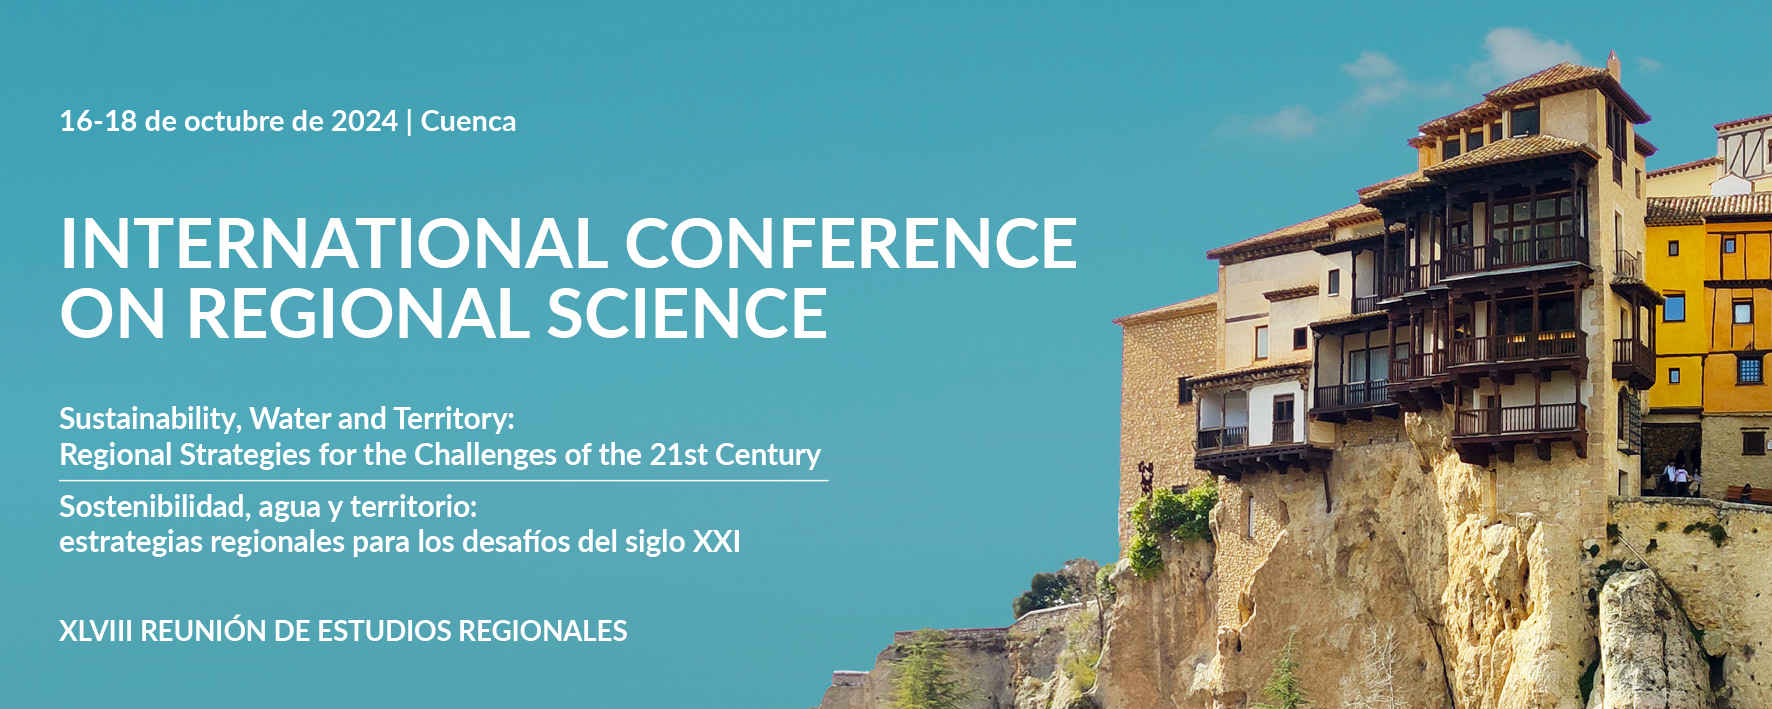 Invitación a organizar Special Sessions en la XLVIII Reunión de Estudios Regionales – Cuenca, 16-18 de octubre de 2024